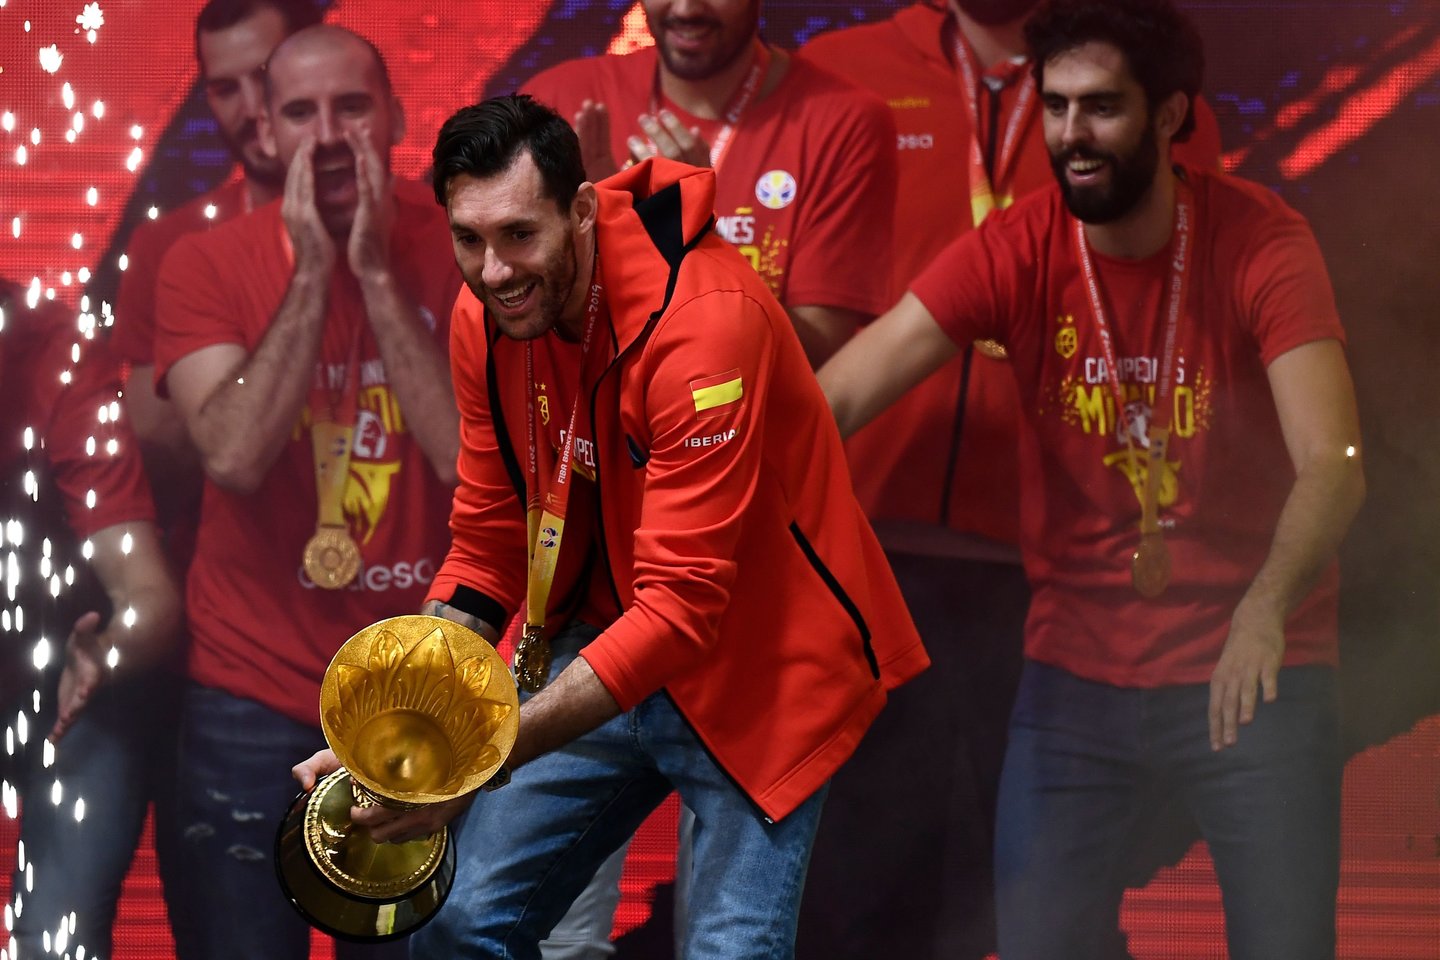  Ispanijoje griausmingai sutikti pasaulio krepšinio čempionai.<br> Scanpix nuotr.